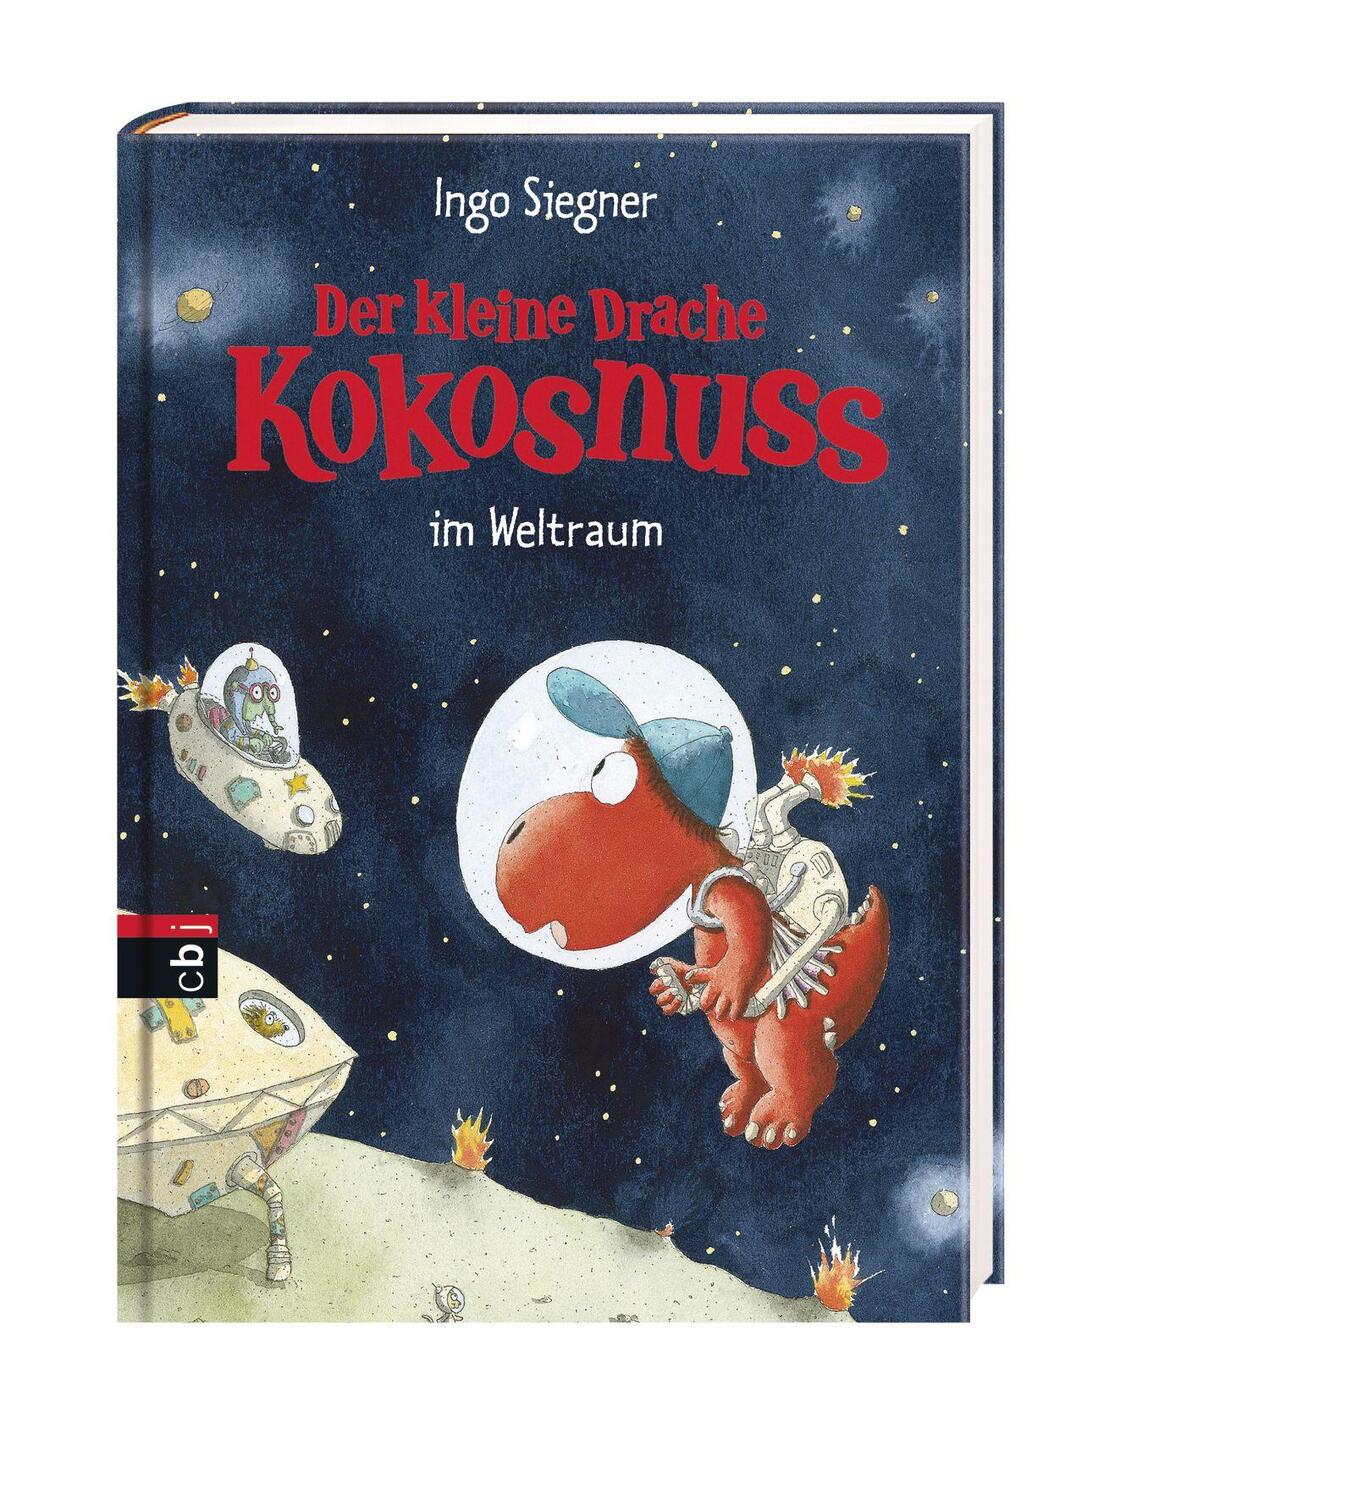 Bild: 9783570152836 | Der kleine Drache Kokosnuss 17 im Weltraum | Ingo Siegner | Buch | cbj